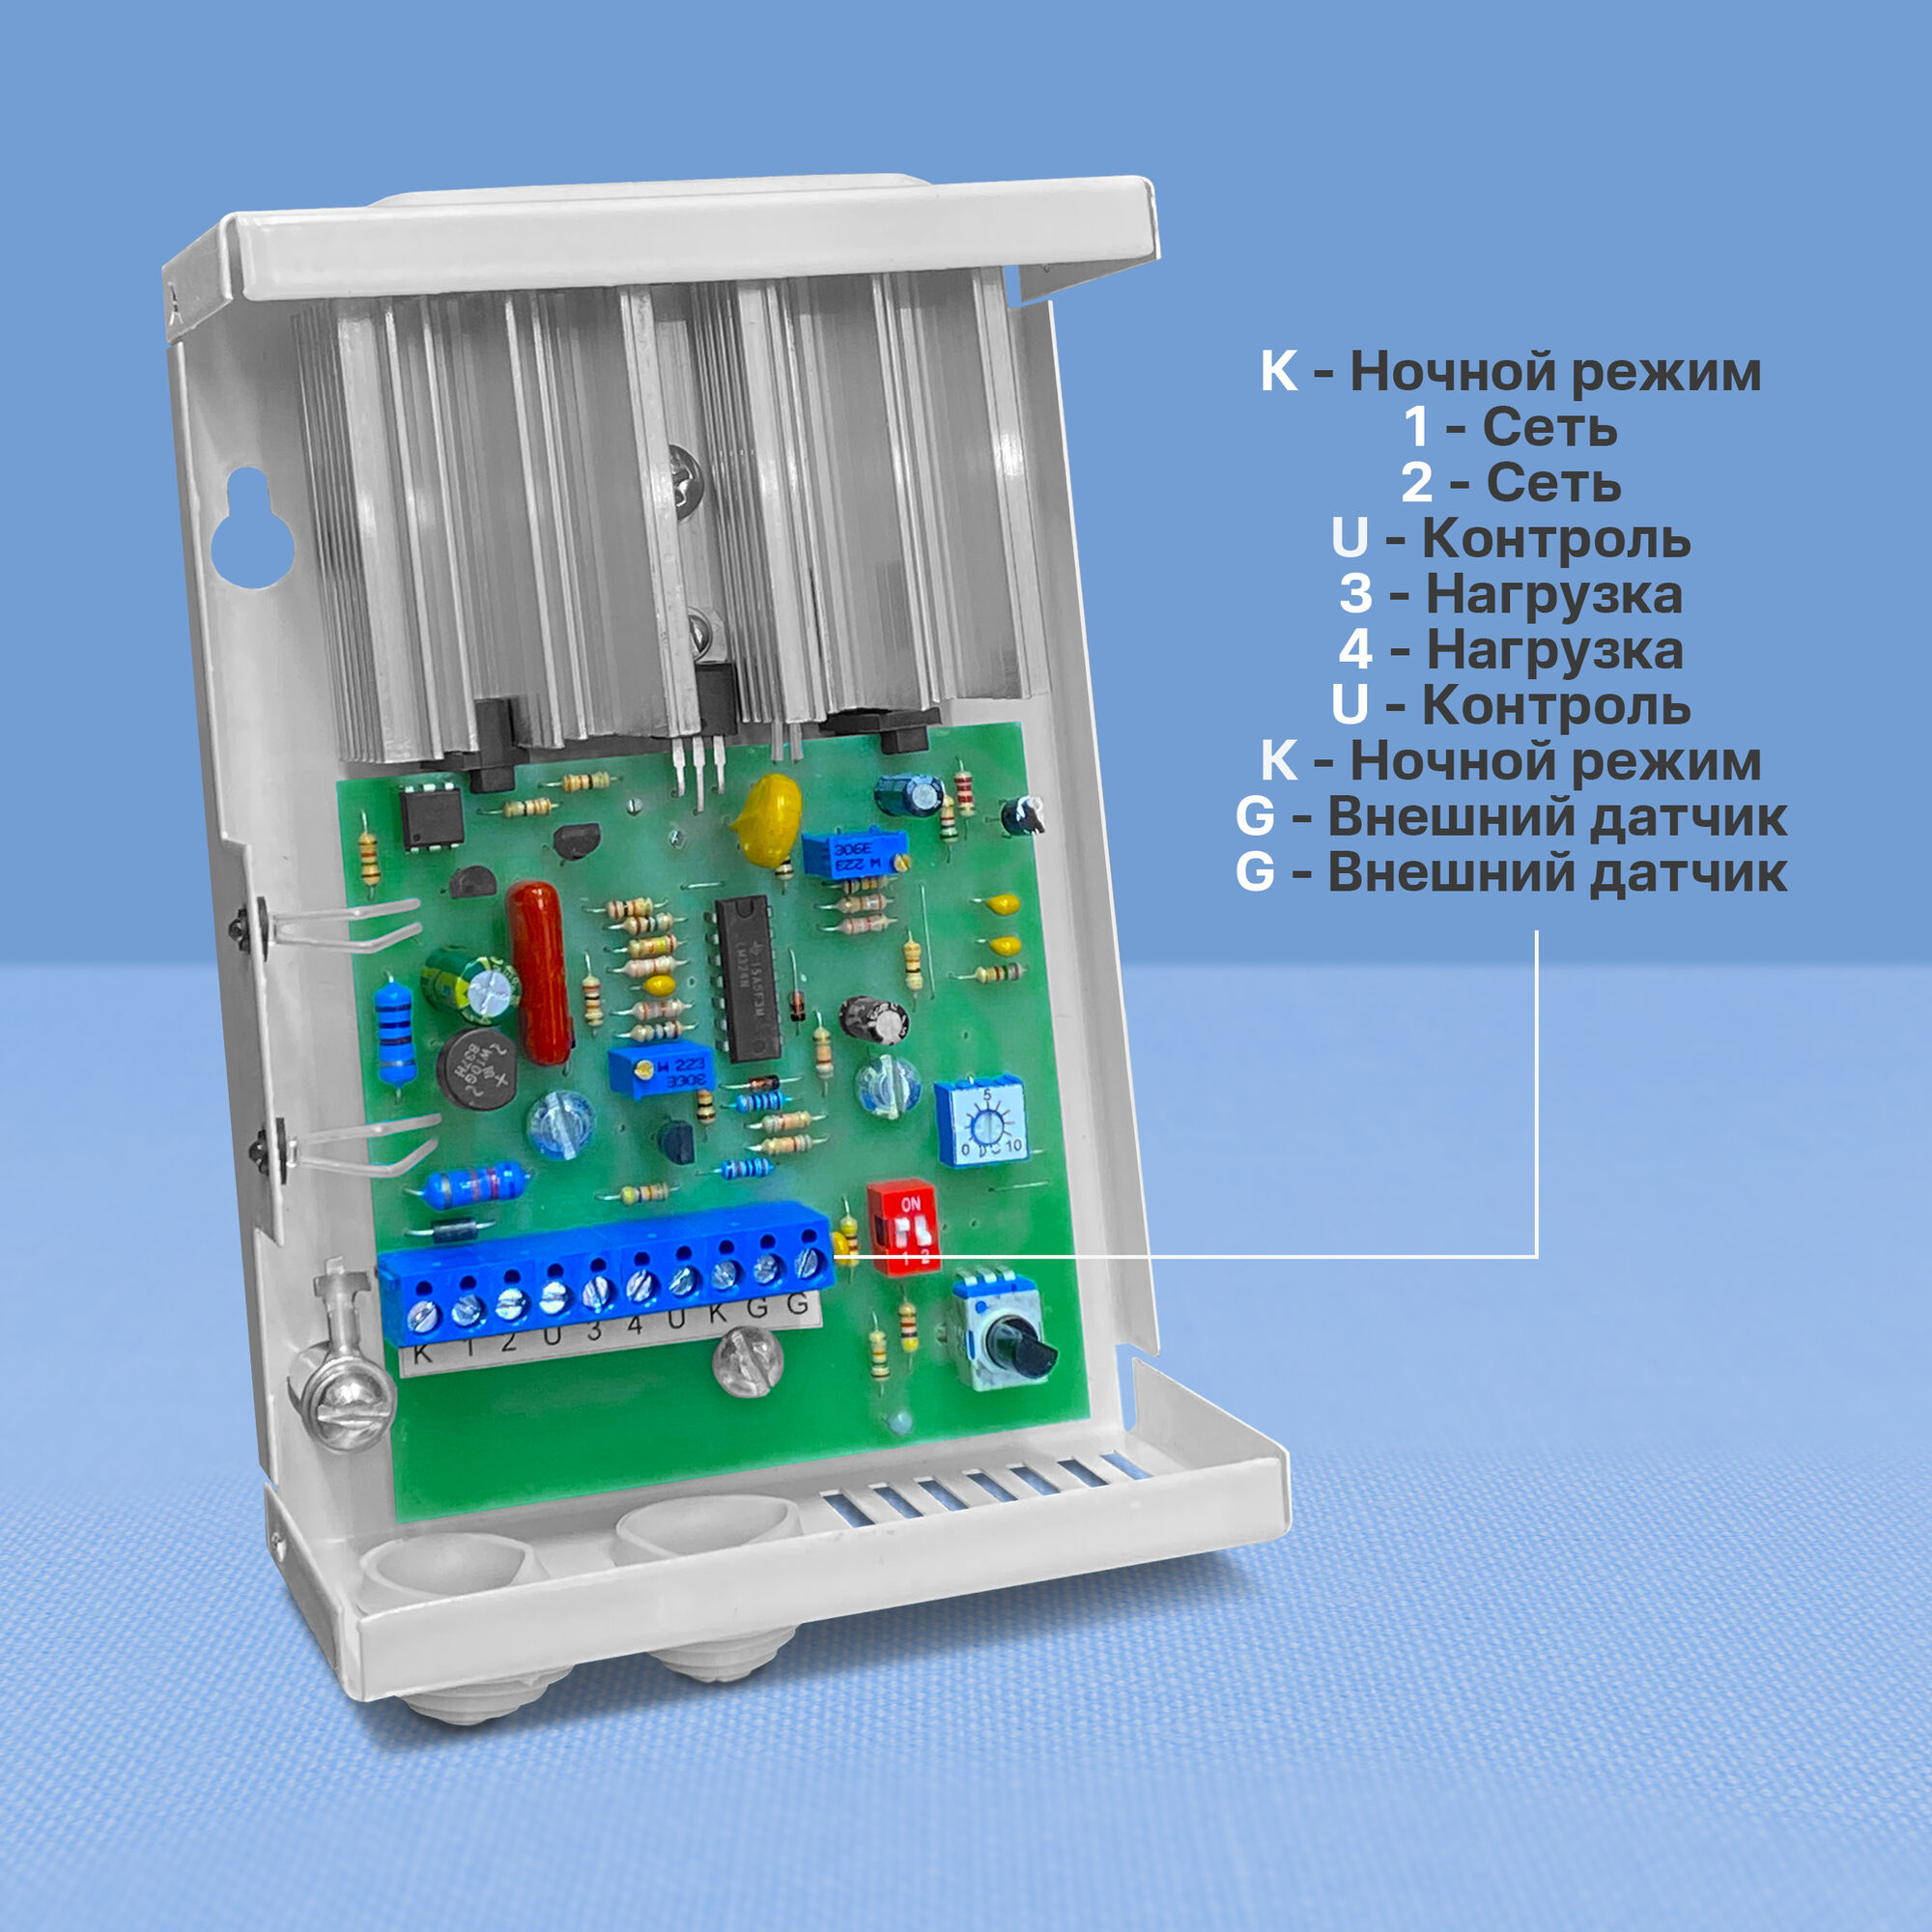 RV3-25/P регулятор мощности электрических нагревателей